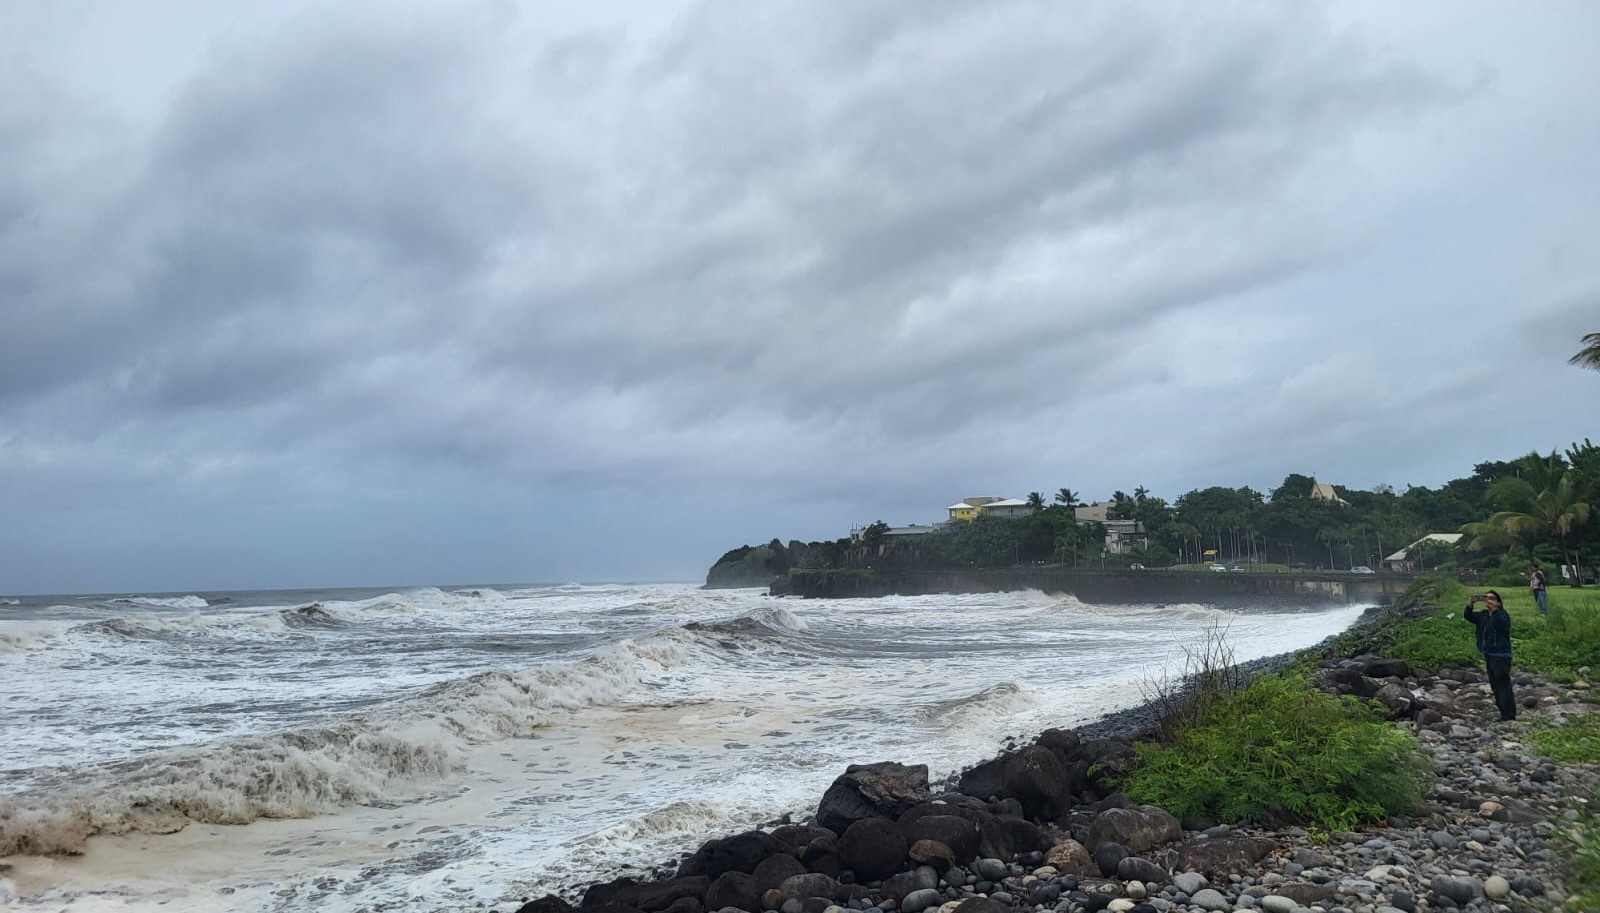     Le cyclone Belal menace l’île de la Réunion, placée en alerte rouge

